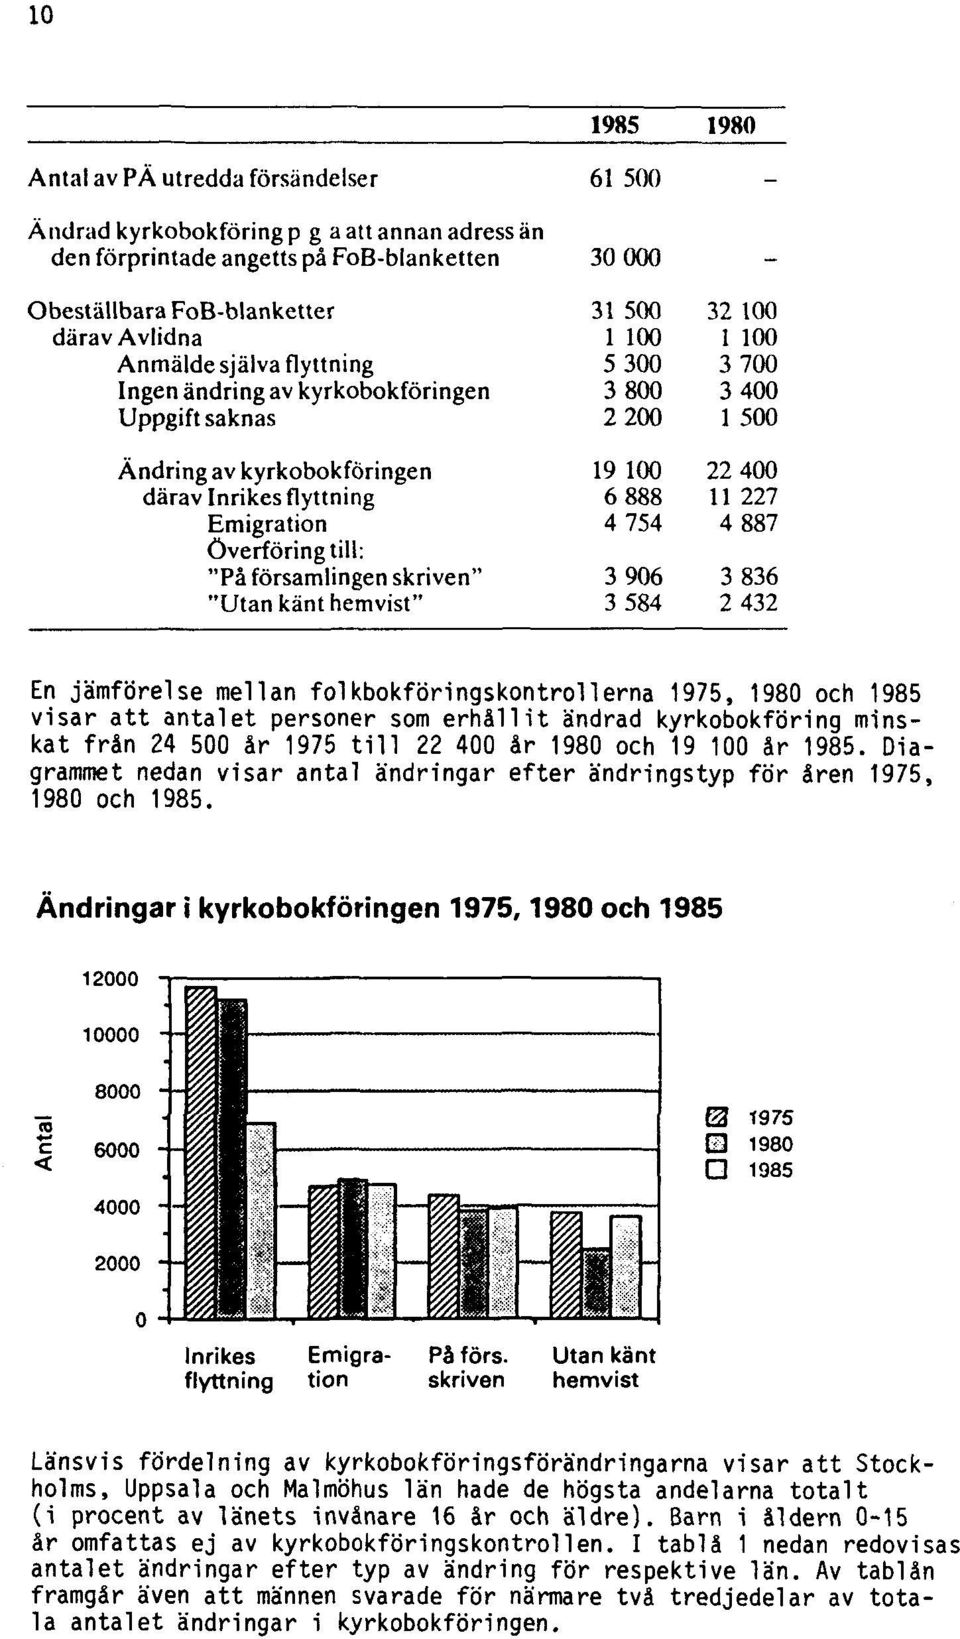 Ändringar i kyrkobokföringen 1975,1980 och 1985 Länsvis fördelning av kyrkobokföringsförändringarna visar att Stockholms, Uppsala och Malmöhus län hade de högsta andelarna totalt (i procent av